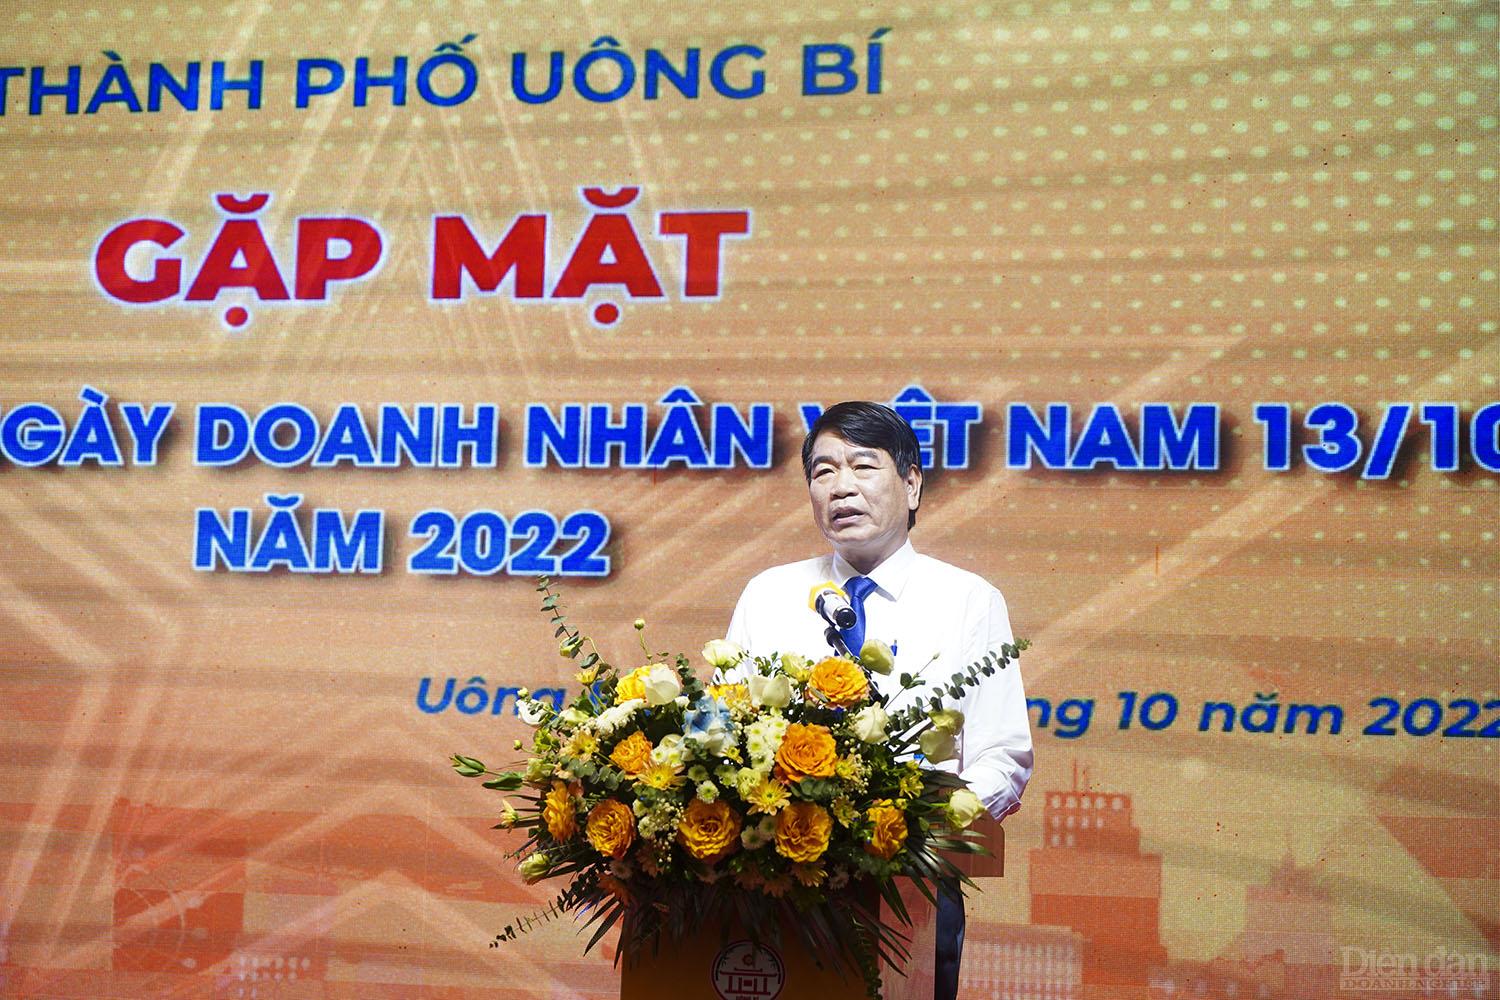 Ông Dương Văn Thơm, Chủ tịch Hiệp hội Doanh nghiệp thành phố Uông Bí, tỉnh Quảng Ninh